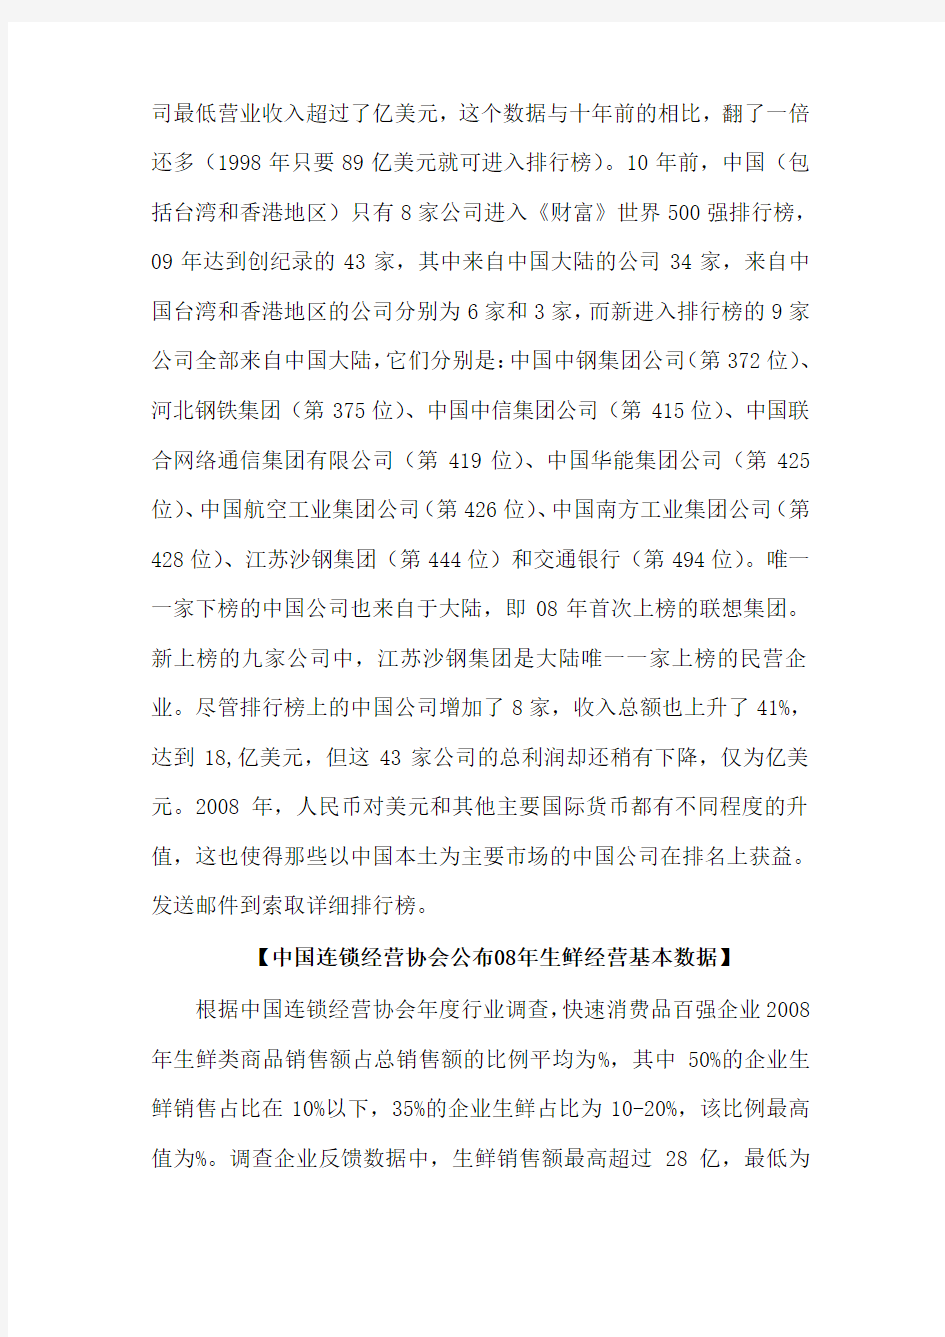 中国连锁经营协会公布生鲜经营基本数据